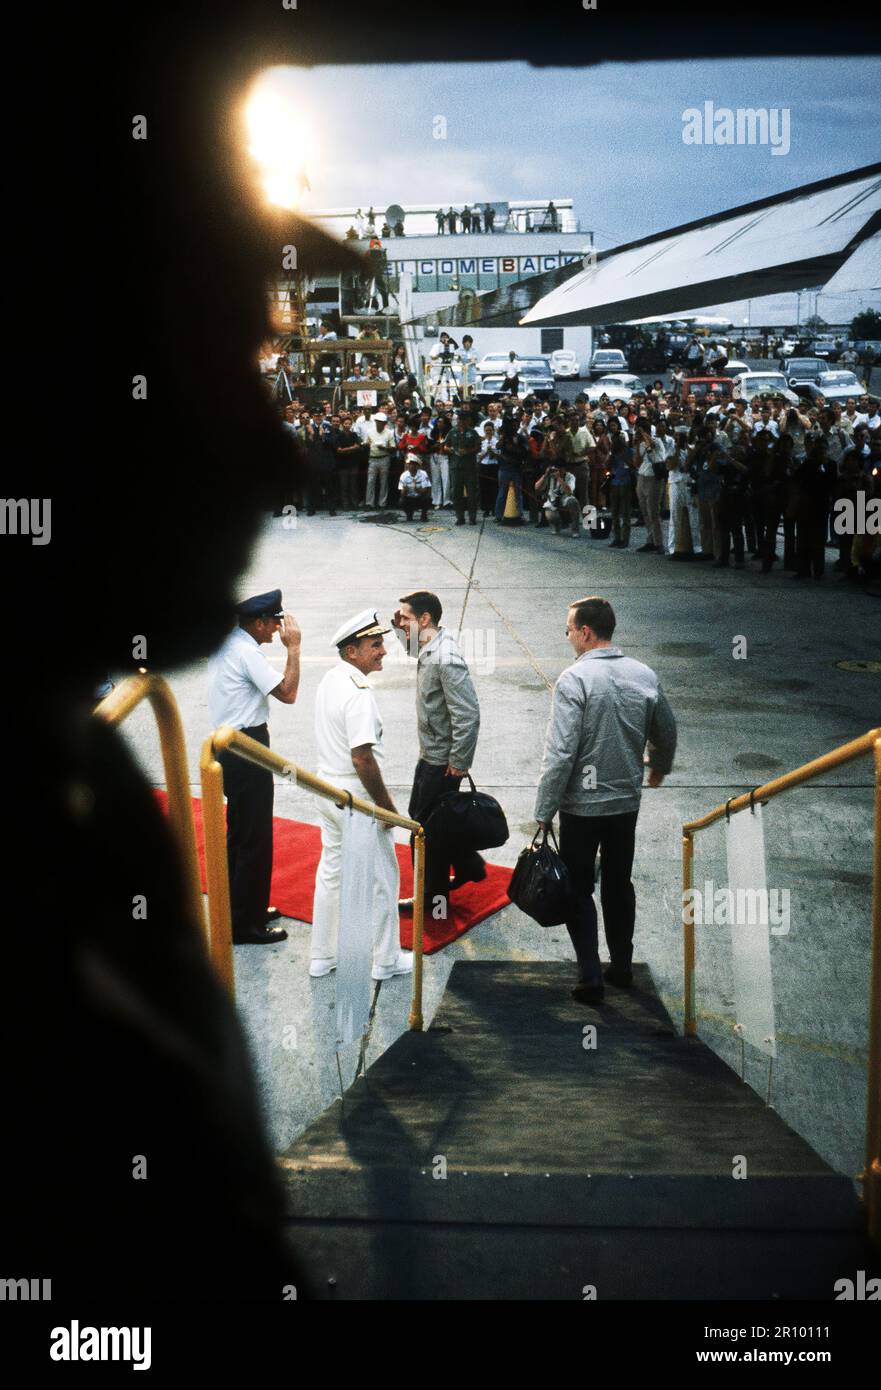 Vista dall'interno del C-141 come due ex prigionieri di guerra sono accolti al loro arrivo, dopo il volo da Hanoi, Vietnam del Nord, da sinistra a destra) LGEN William G. Moore Jr., Comandante xiii Air Force e Admiral Noel Gaylor, Comandante del Comando del Pacifico. Foto Stock